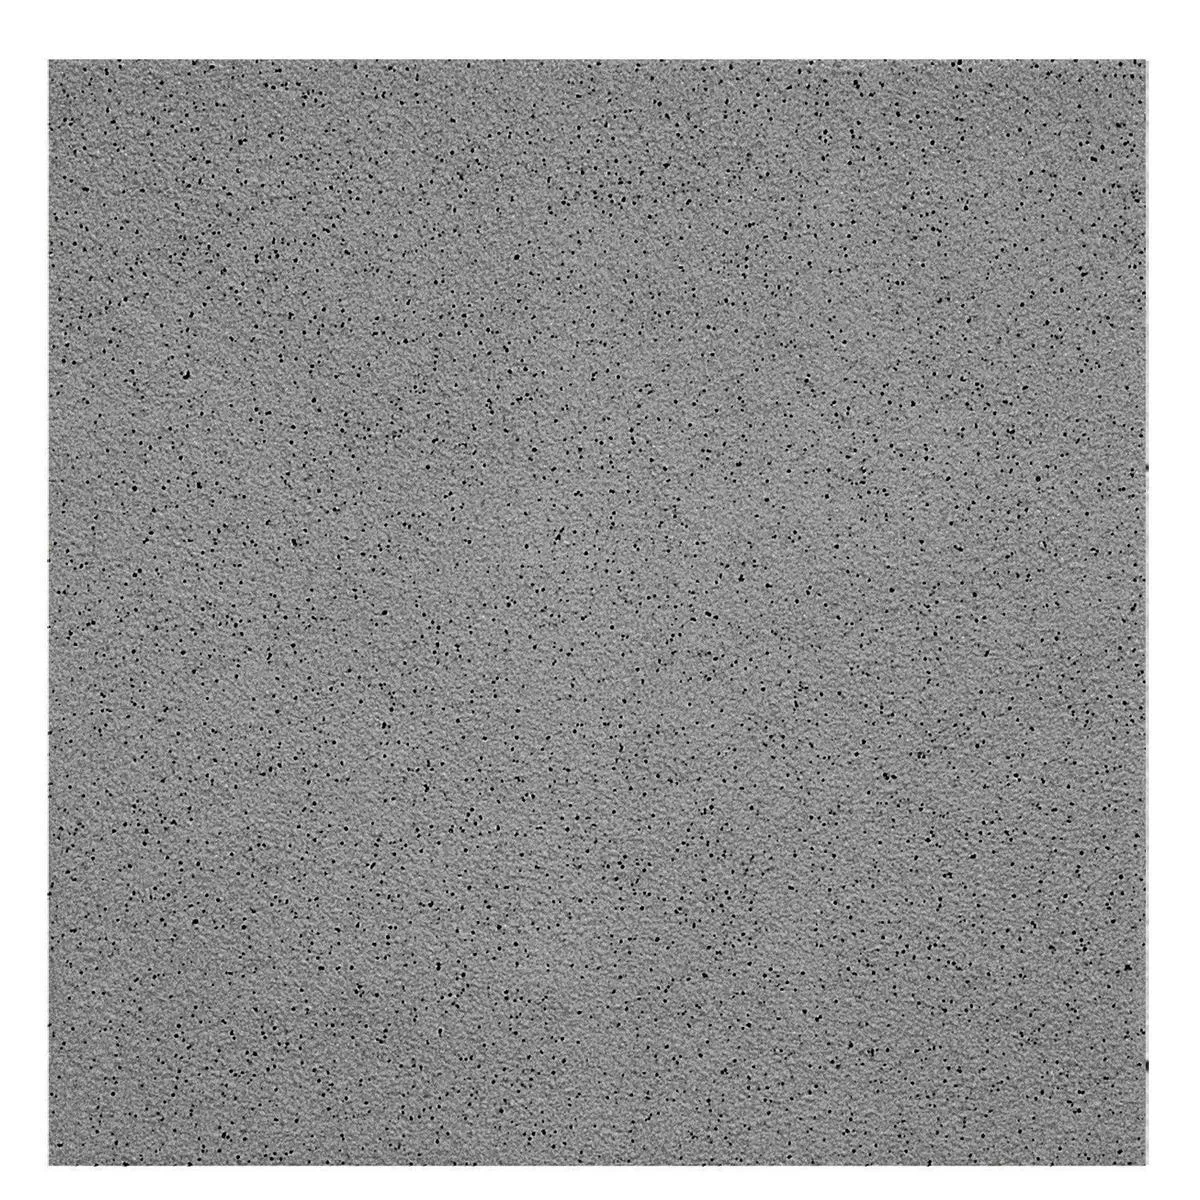 Πλακάκι Δαπέδου Ψιλό Σιτάρι R10/A Ανθρακίτης 15x15cm